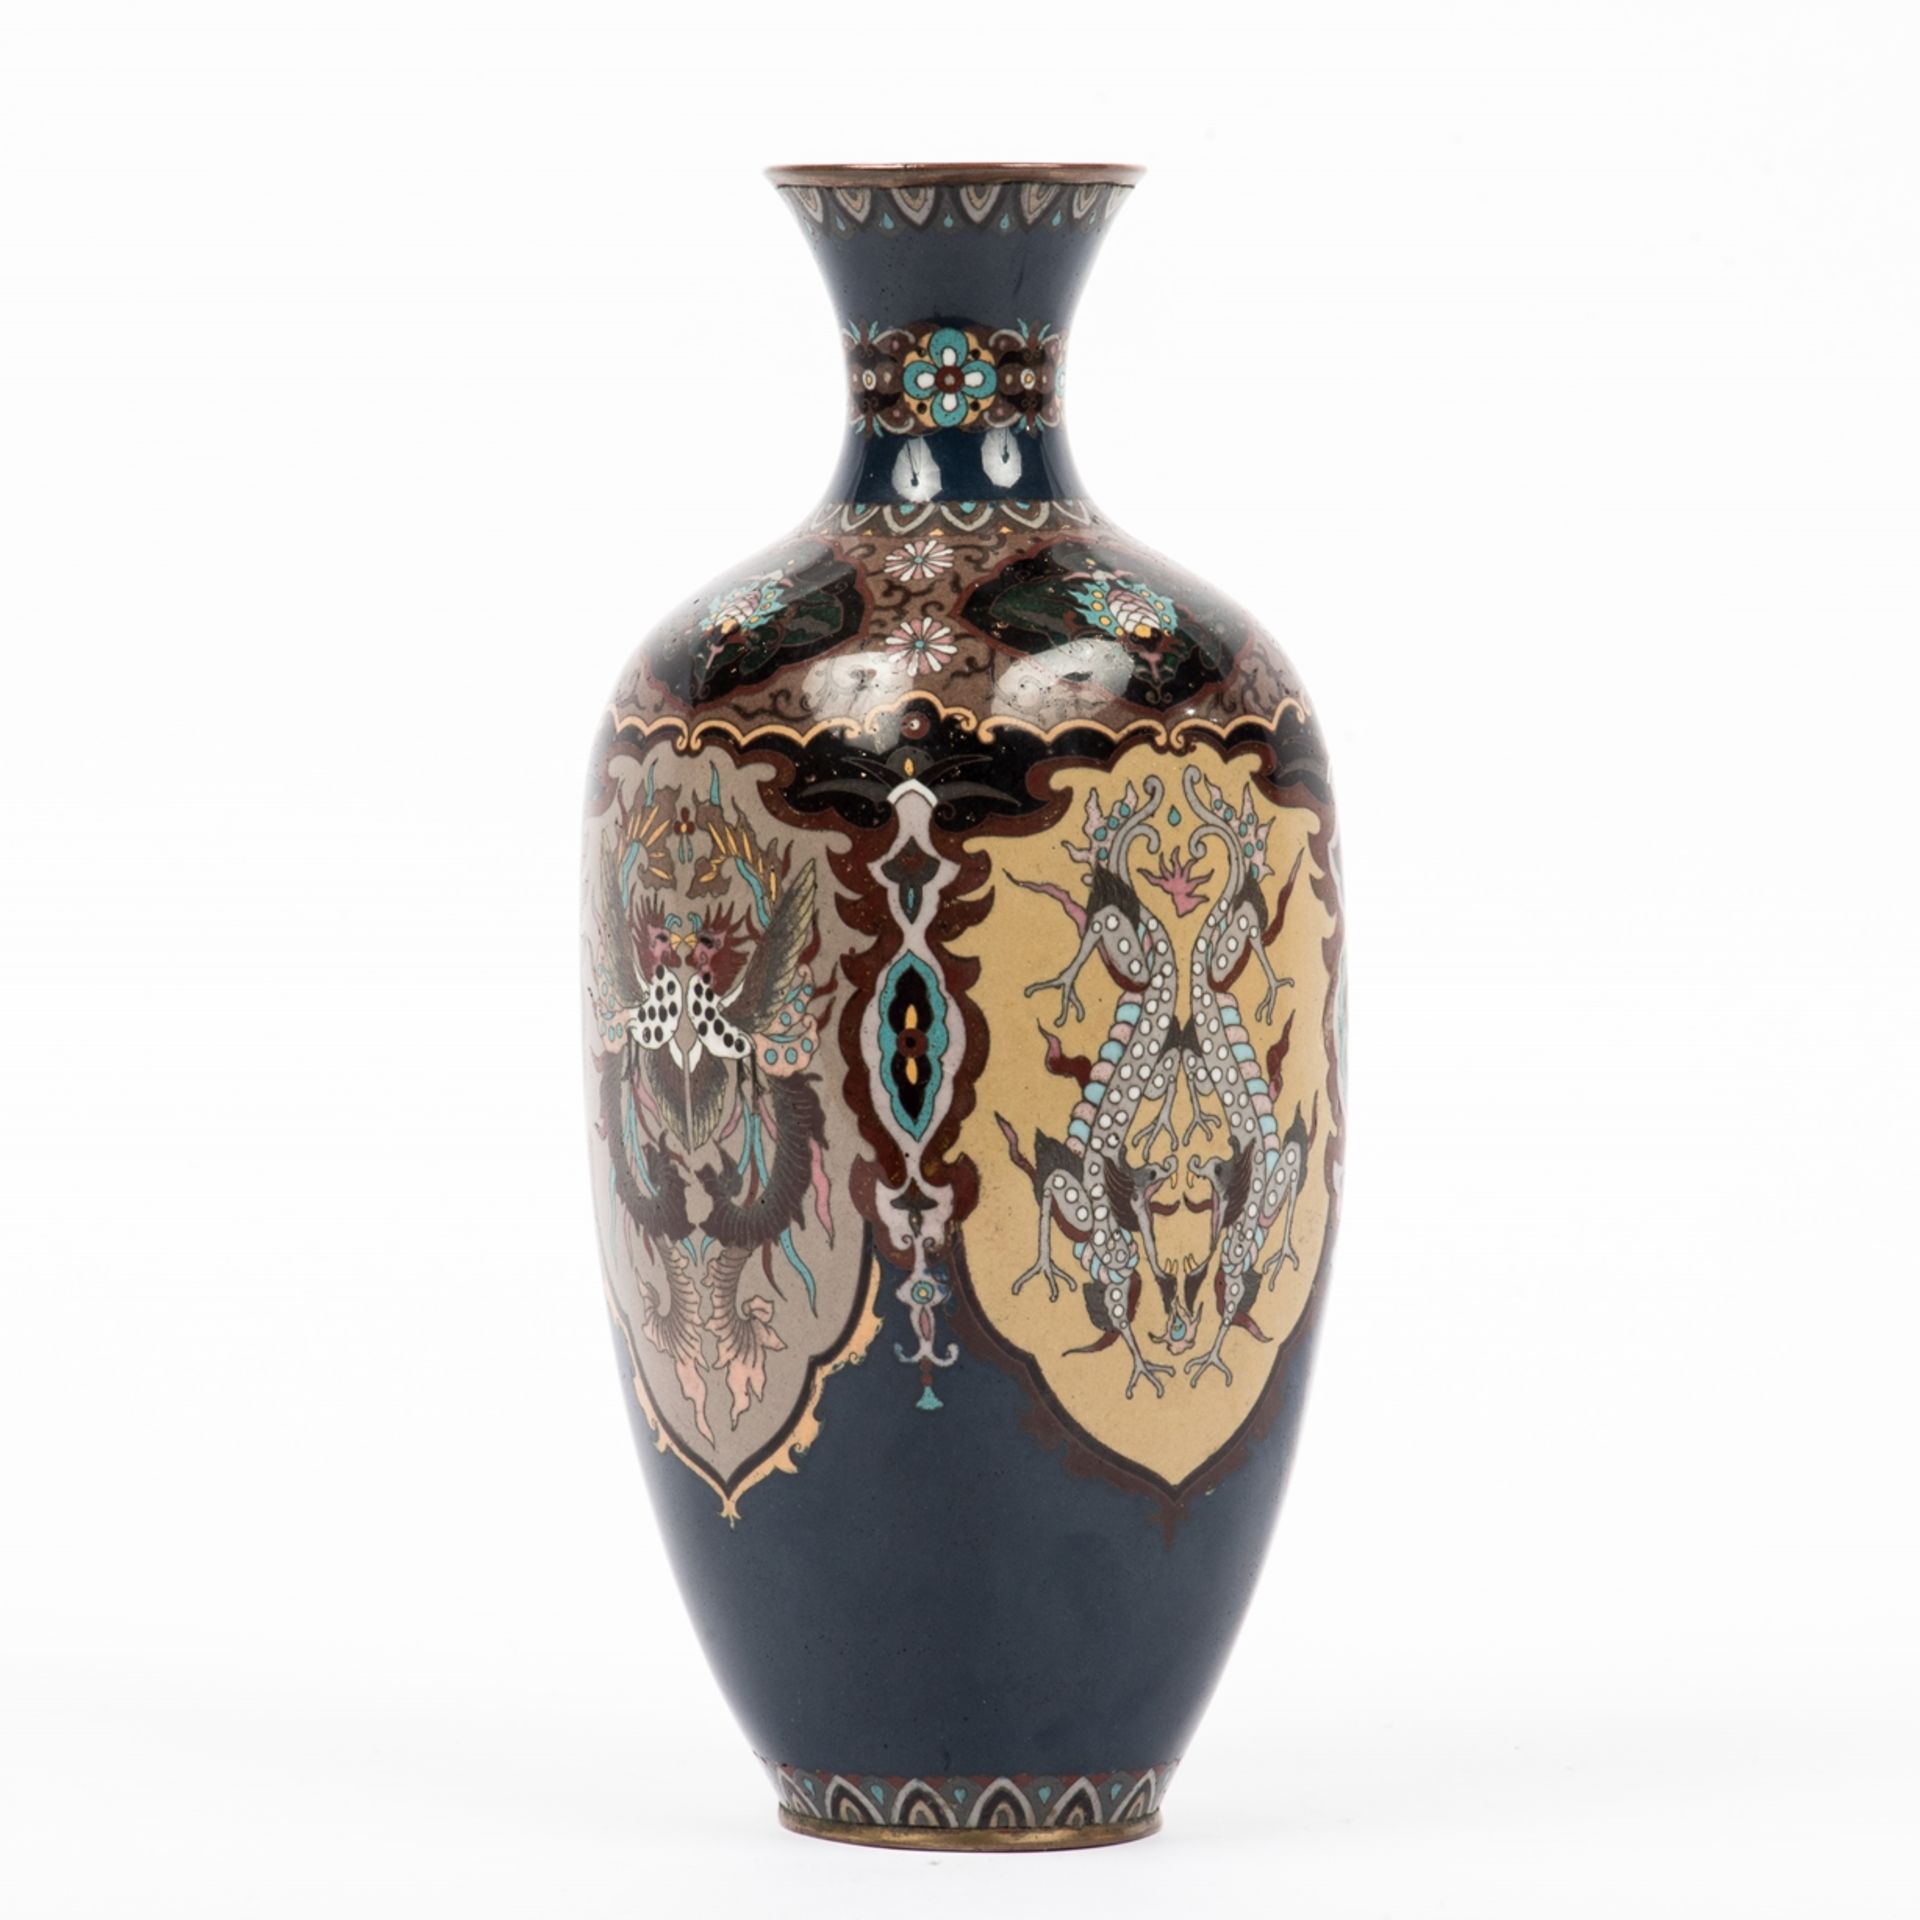 Cloisonné-Vase, Ende 19. Jh. - Image 2 of 3